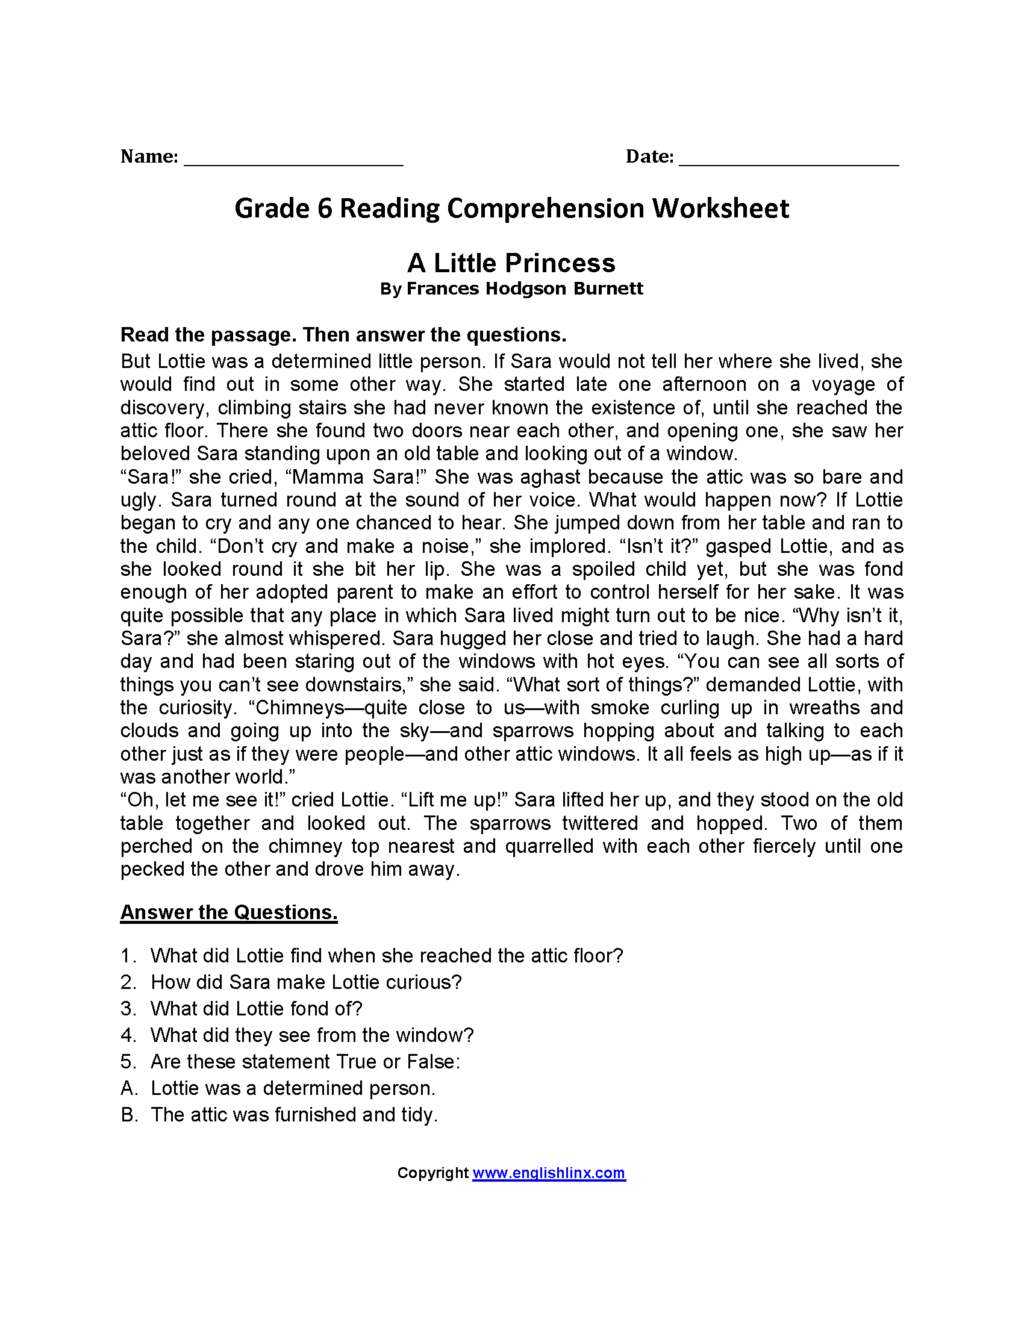 reading-comprehension-worksheet-grade-6-reading-comprehension-worksheets